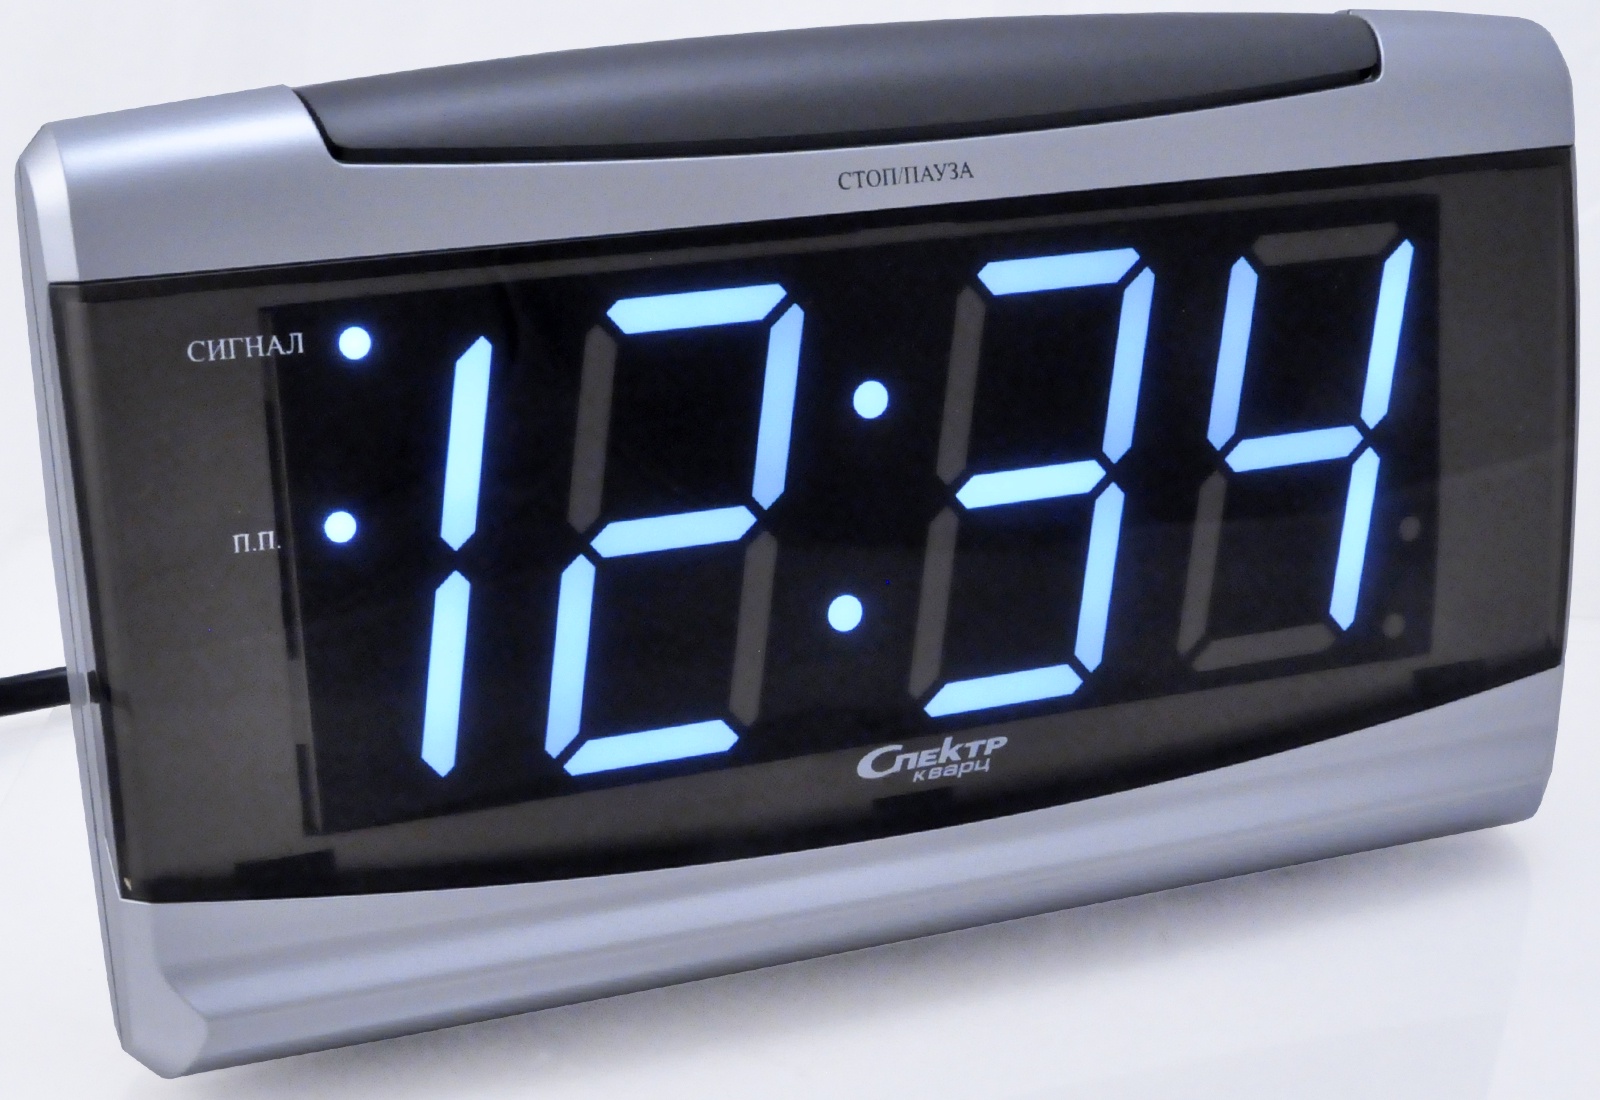 Купить настольные электронные часы в москве. Часы будильник спектр кварц ск1819. Часы спектр CK 2201. Часы будильник спектр кварц ск0719. Будильники спектр 2201.